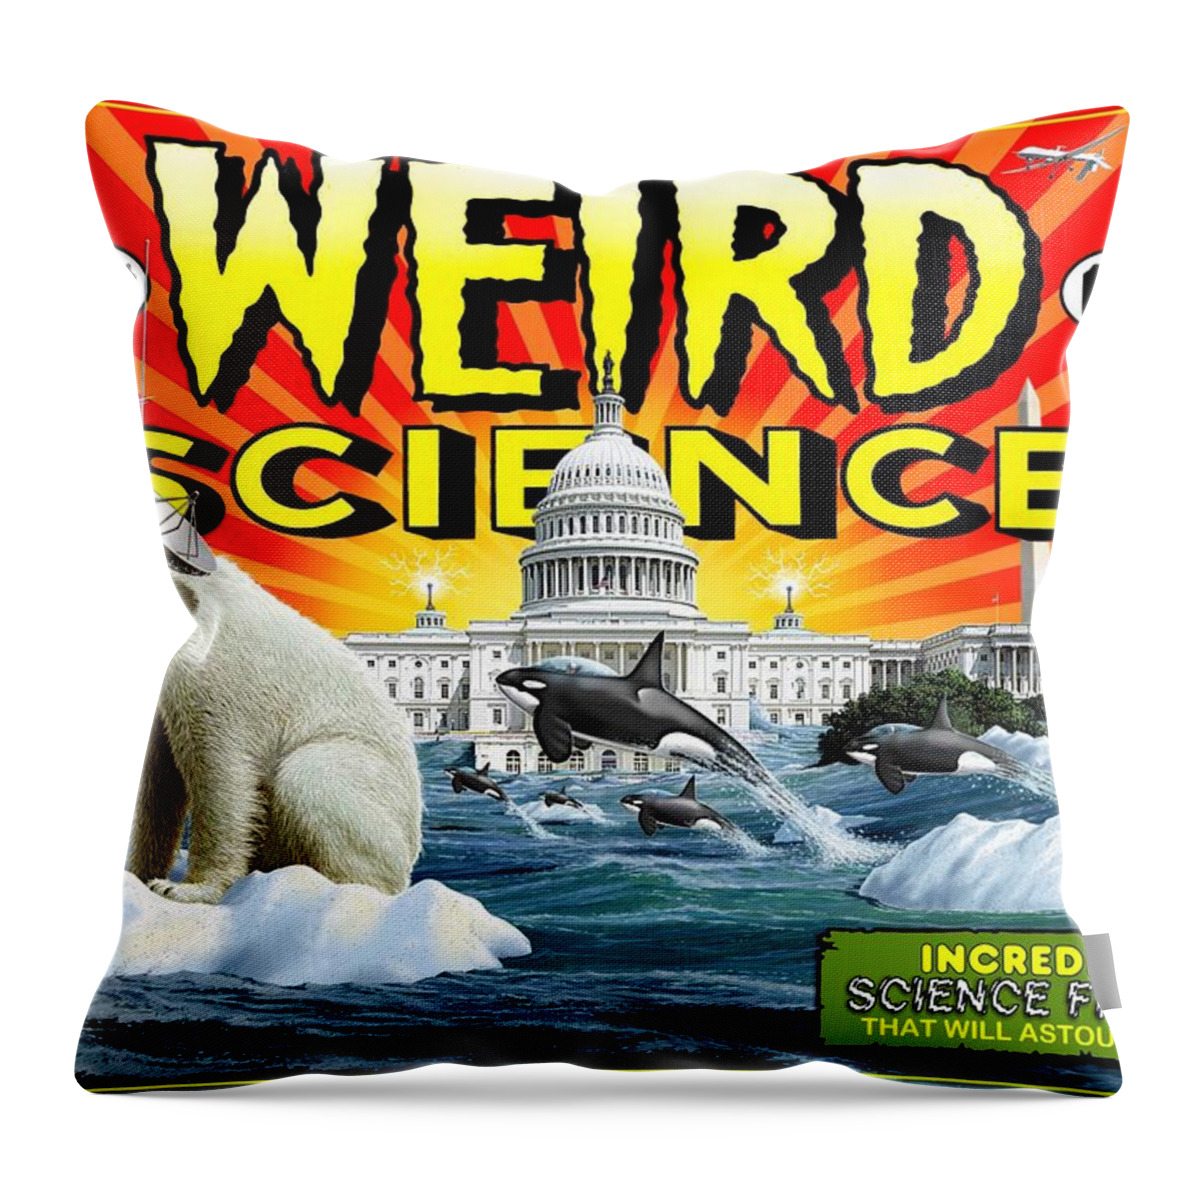 Global Warming Throw Pillow featuring the digital art Weird Science by Scott Ross